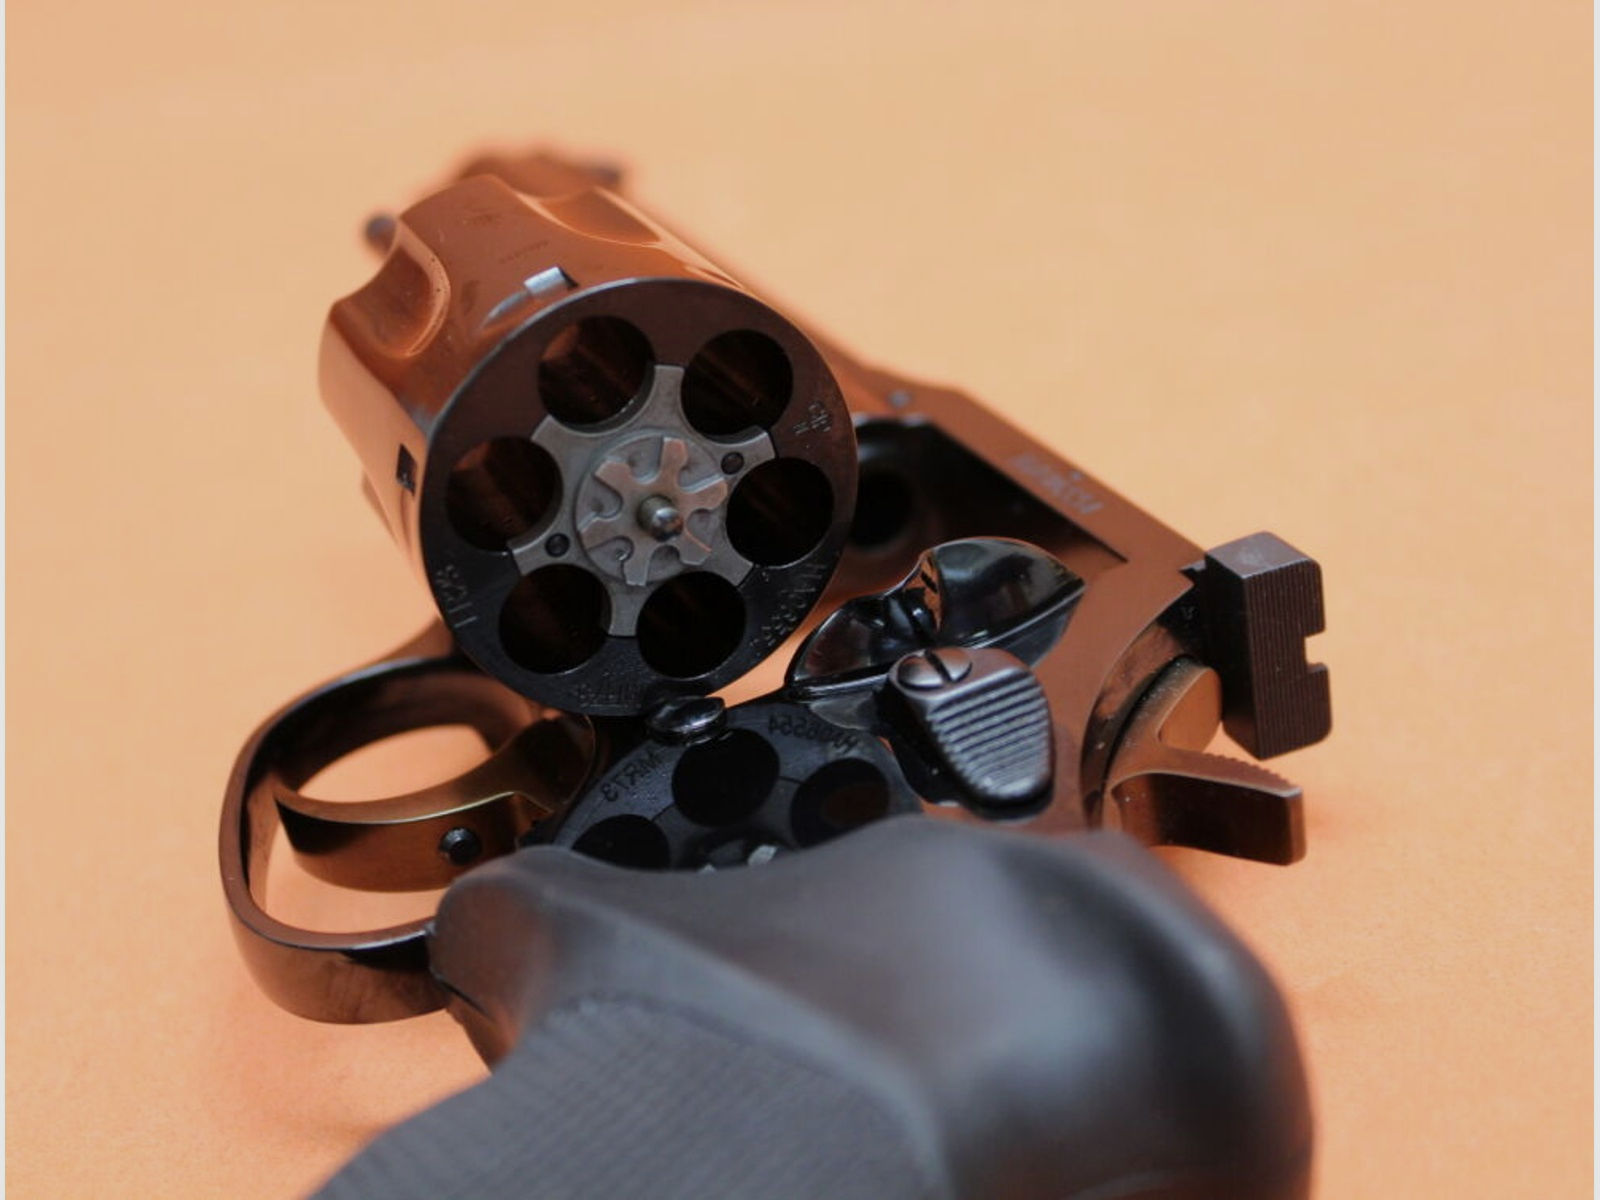 Manurhin	 Revolver .357Magnum Manurhin MR73 Sport 6" Lauf/ Mikrometervisier/ einstellbarer Abzug